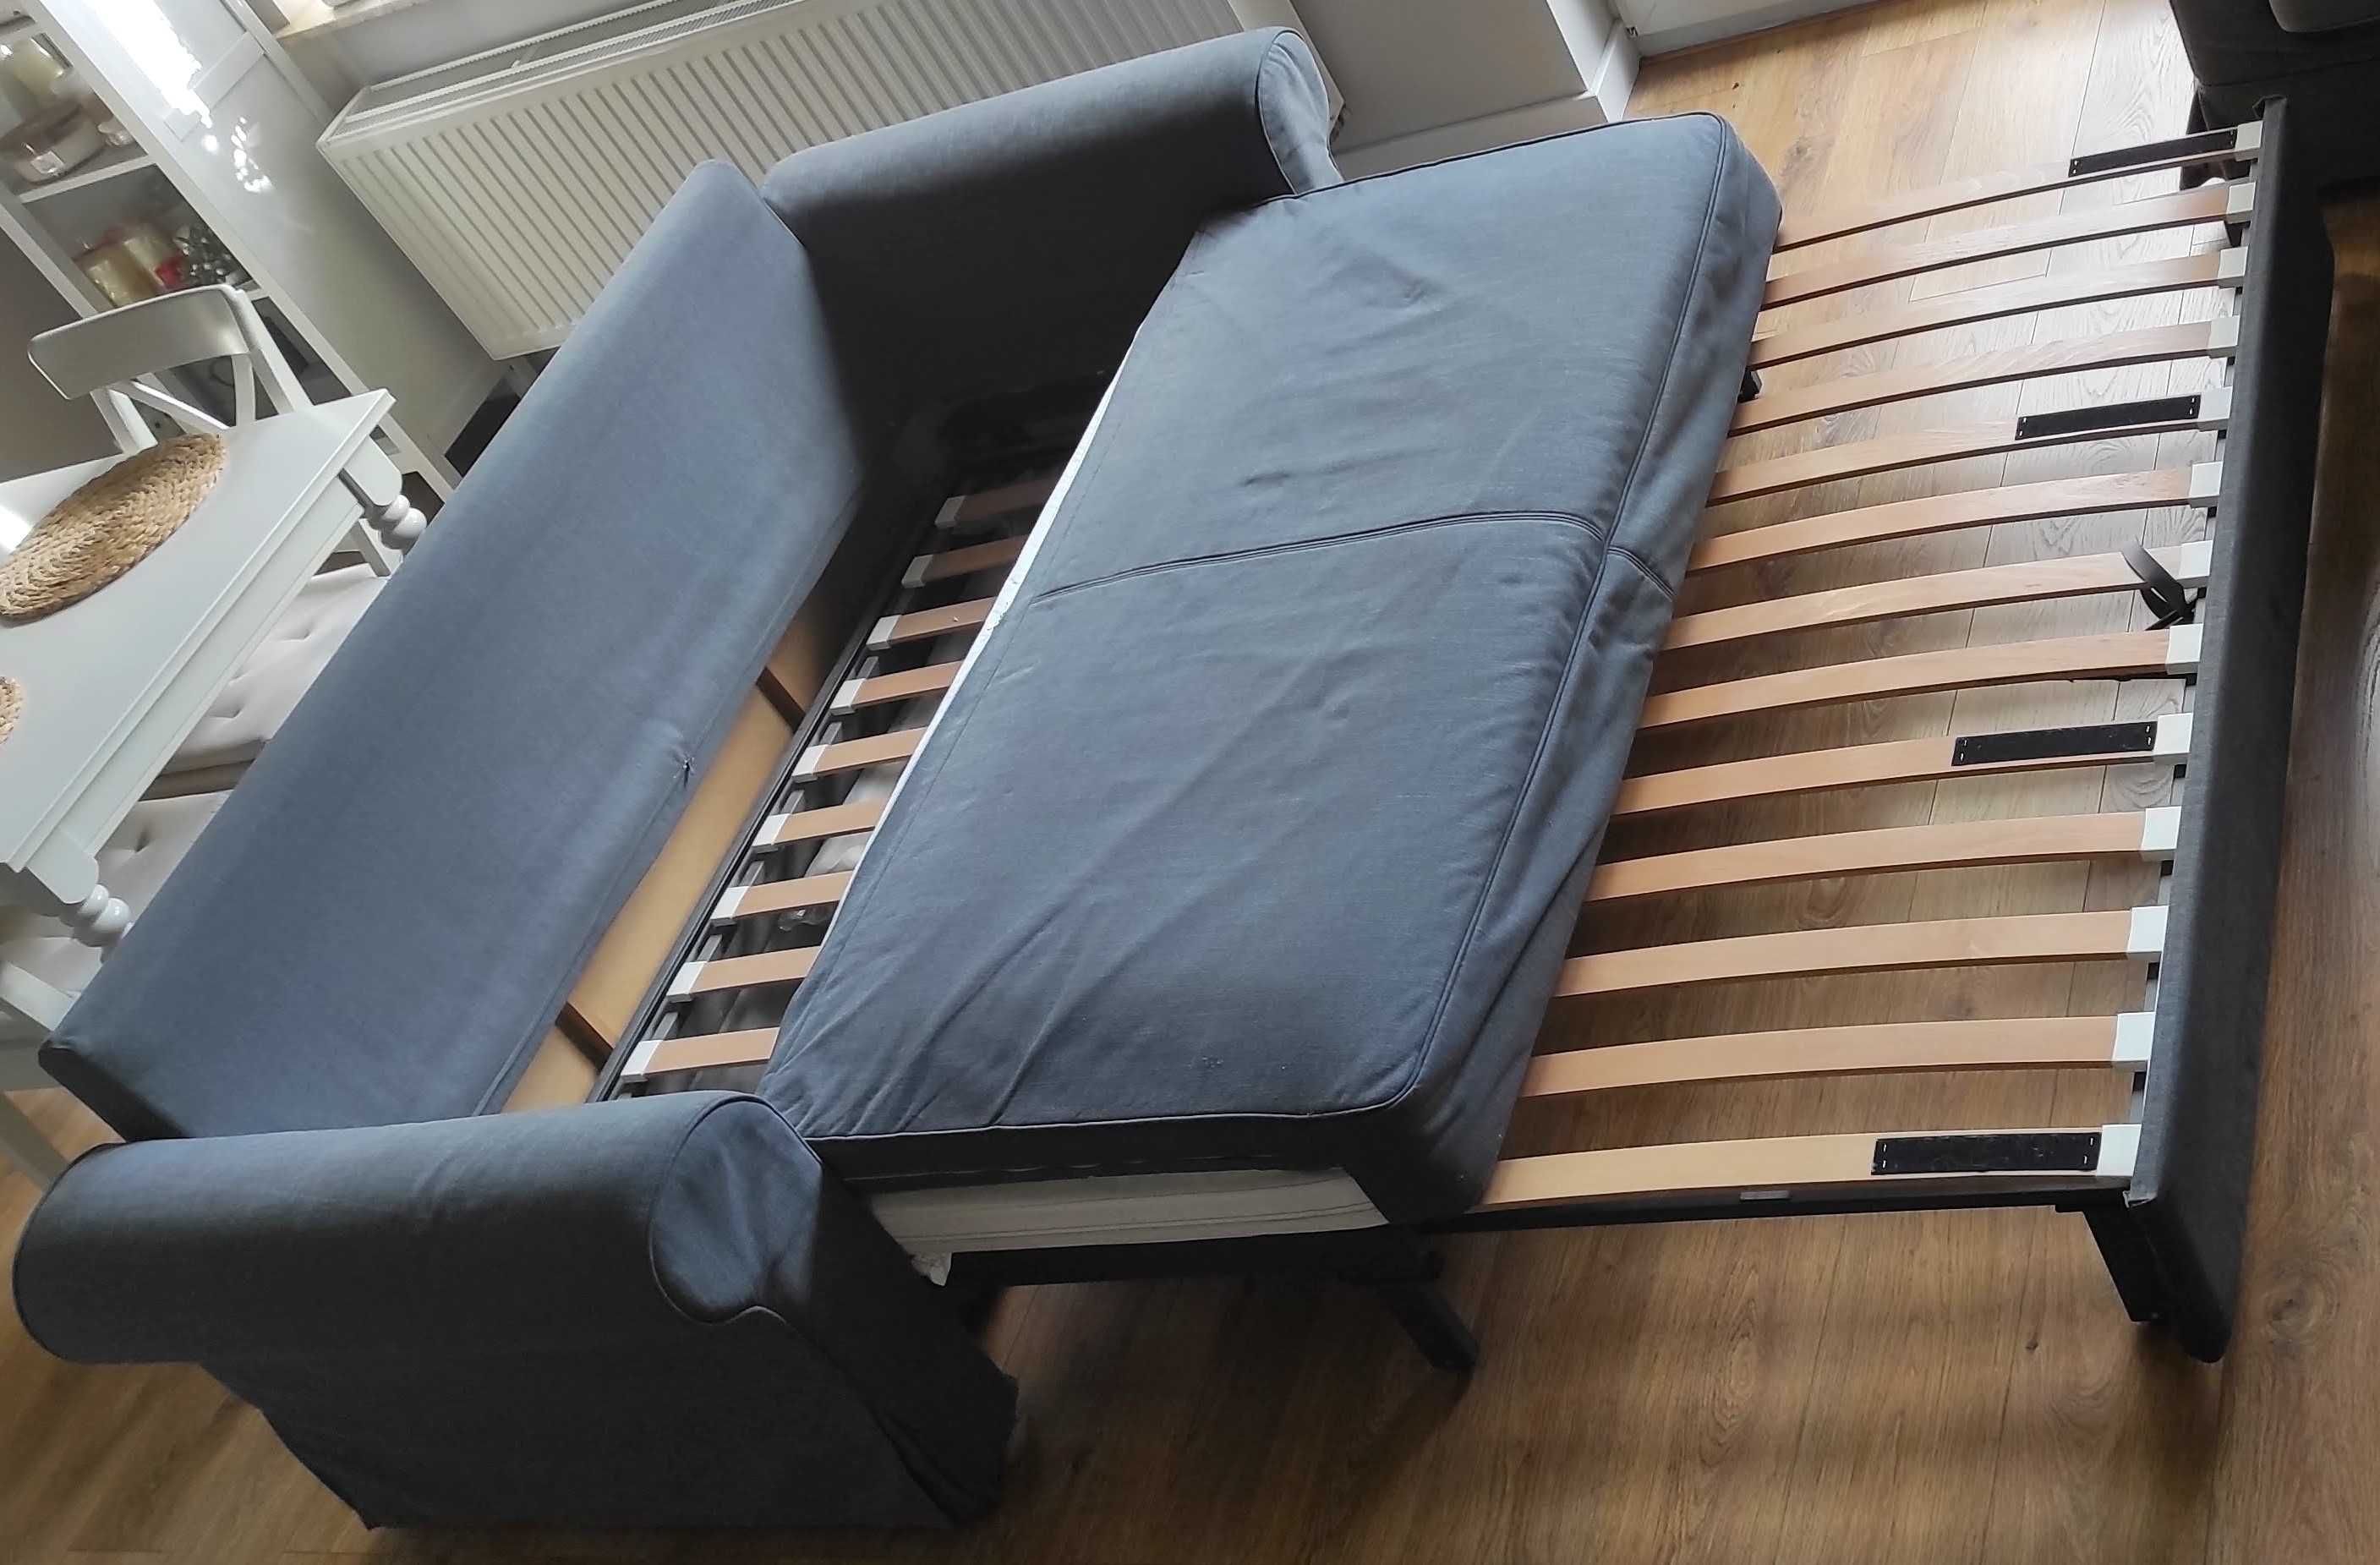 Sofa trzyosobowa rozkładana Ikea, idealna